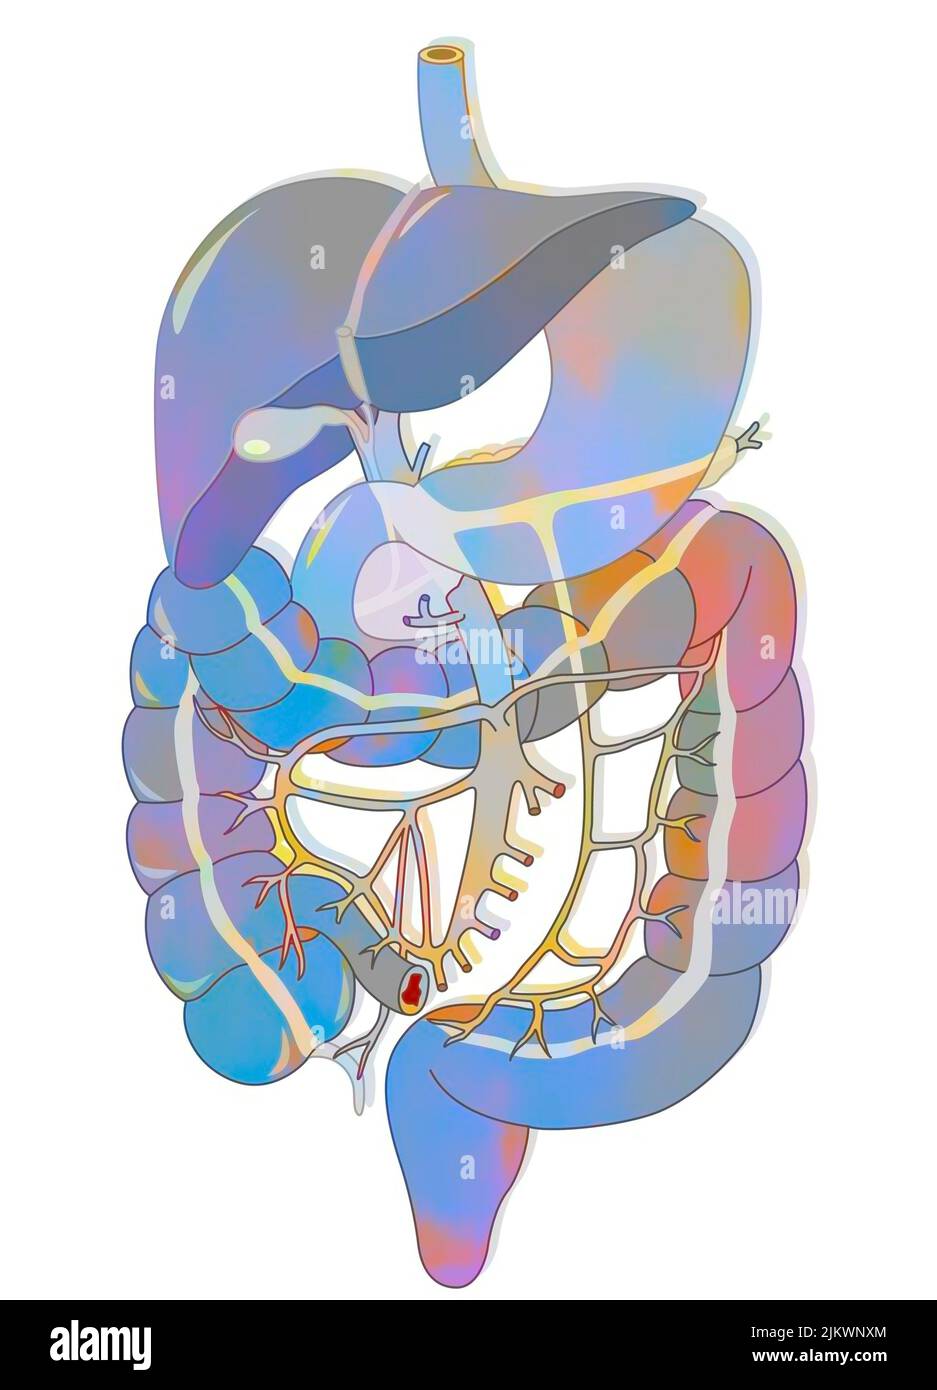 Sistema digestivo: Sistema portal, desde la vena porta hasta las diversas colaterales. Foto de stock